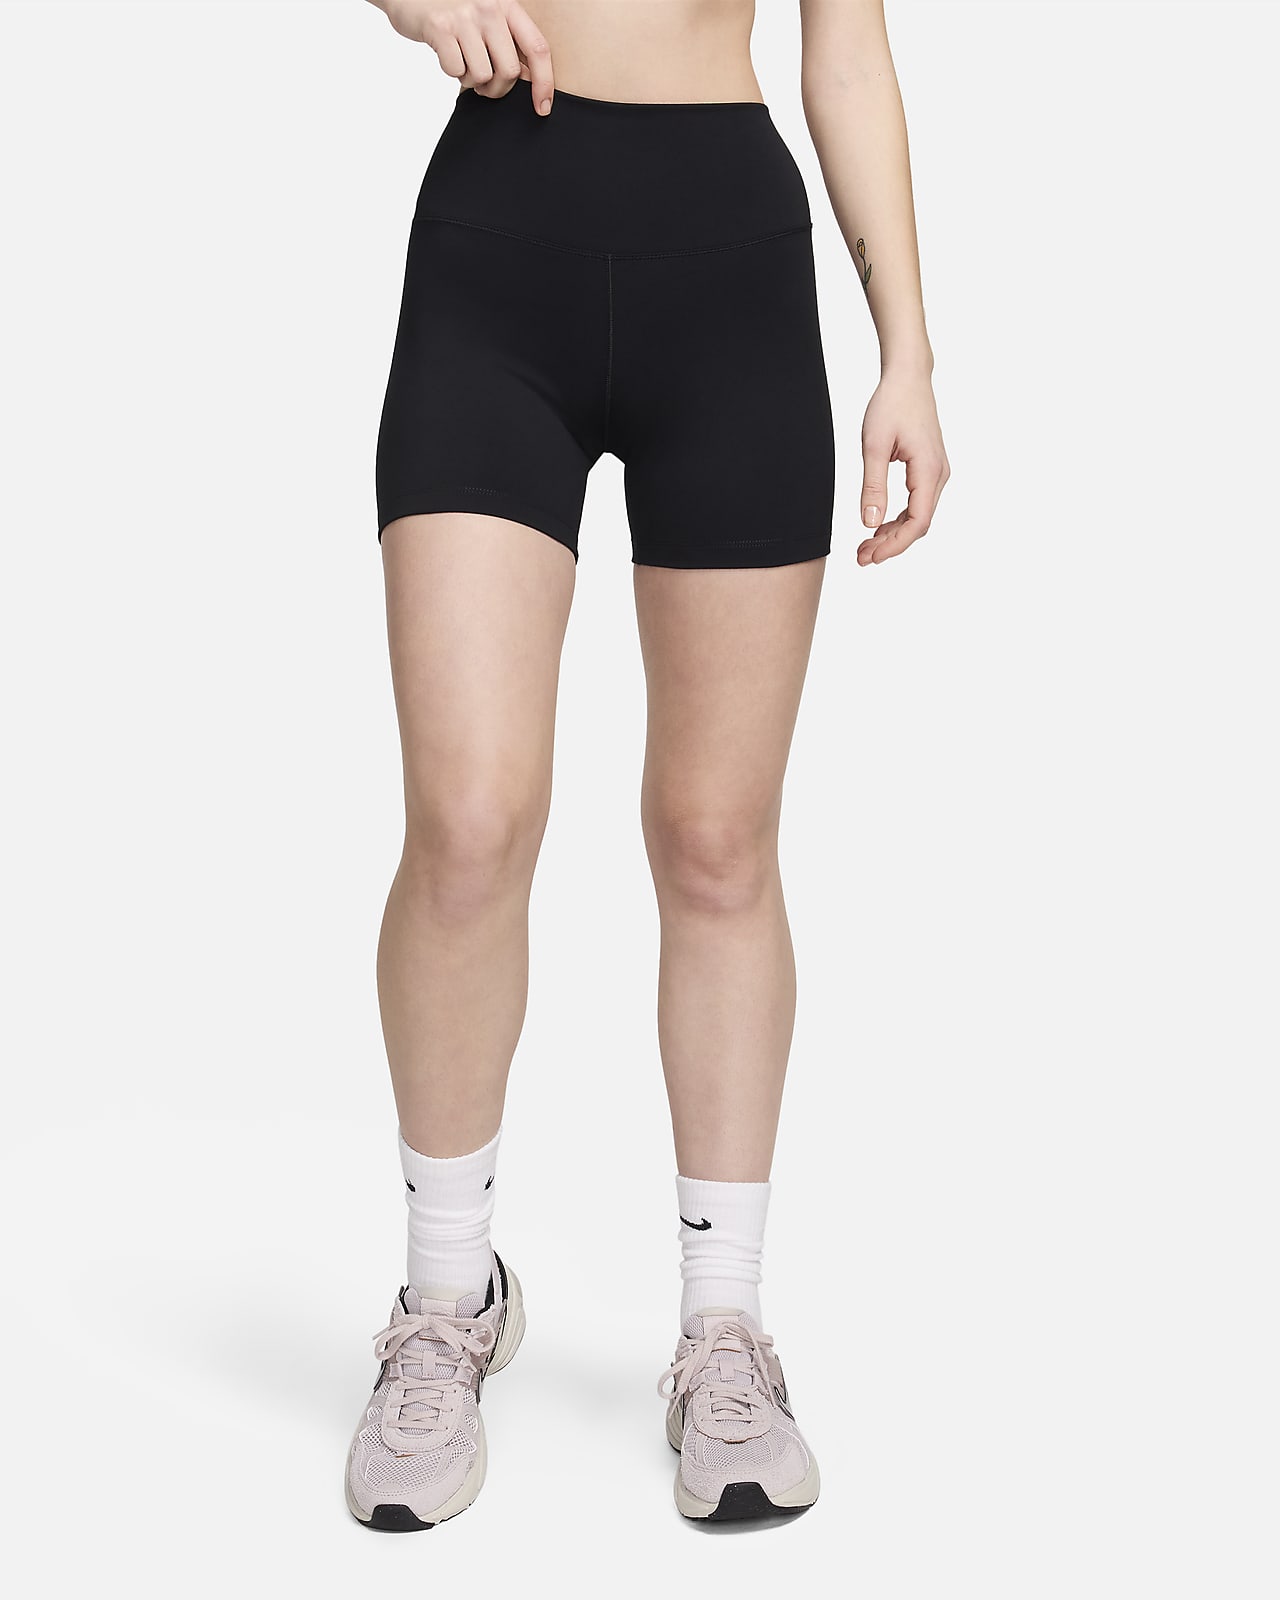 Calções tipo ciclista de cintura subida de 13 cm Nike One para mulher